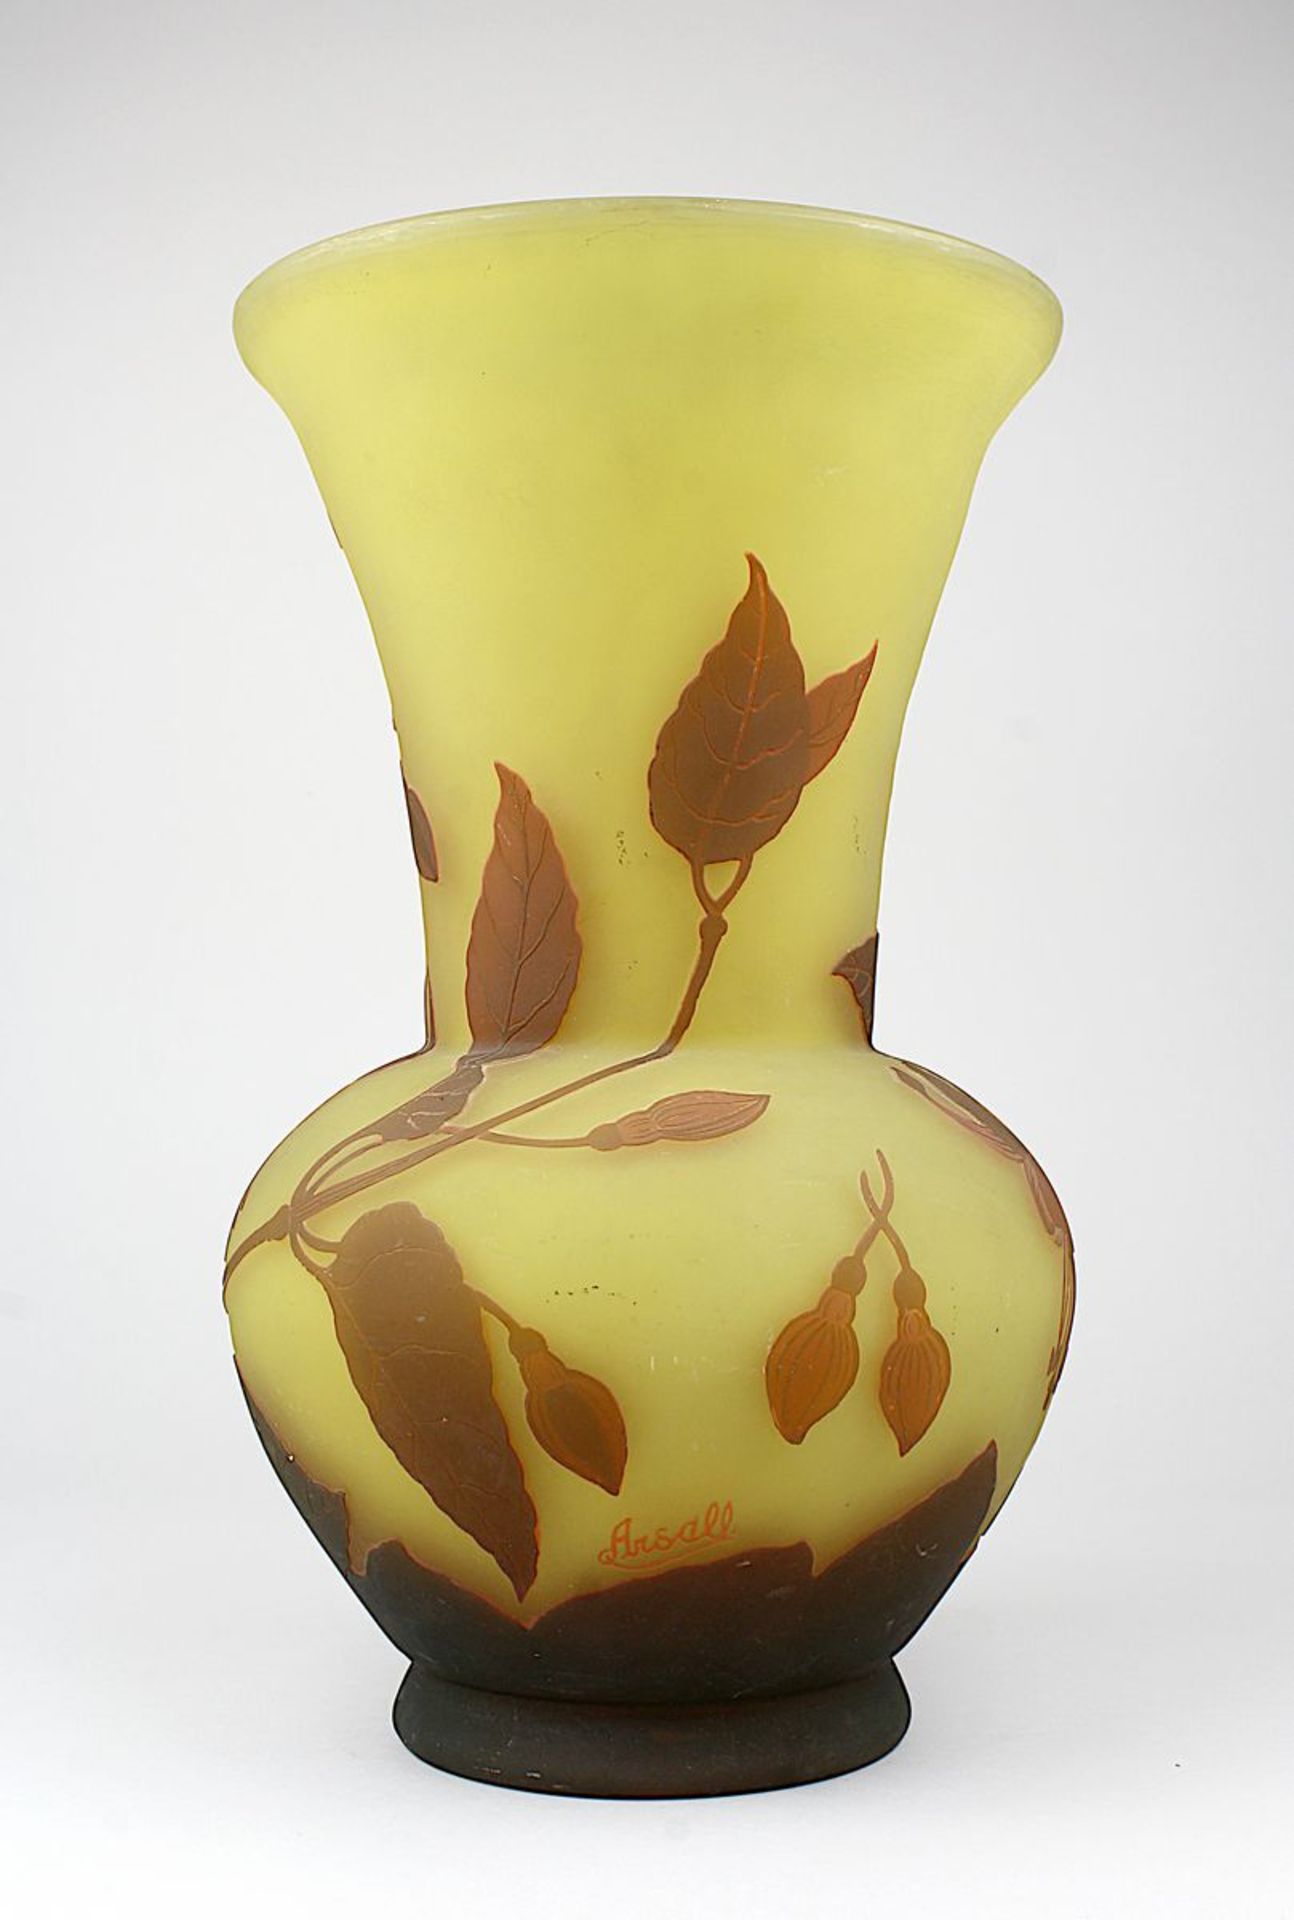 Gr. Arsall-Vase, Fuchsiendekor, Vereinigte Lausitzer Glaswerke, 1918-29, balusterförmiger Korpus aus - Bild 2 aus 2